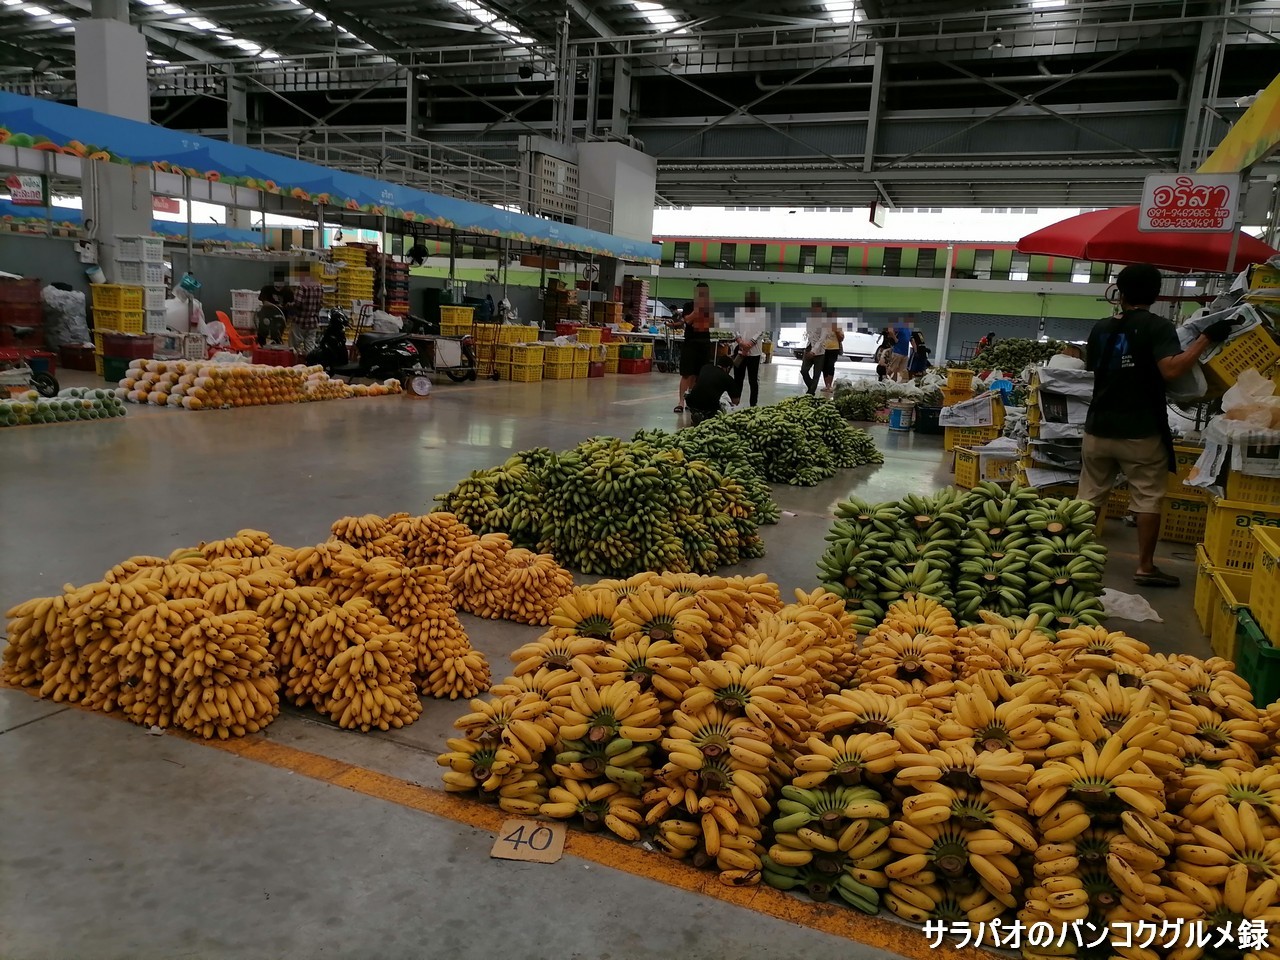 シー・ムム・ムアン市場は東南アジア最大規模の果物市場＠パトゥムターニー県